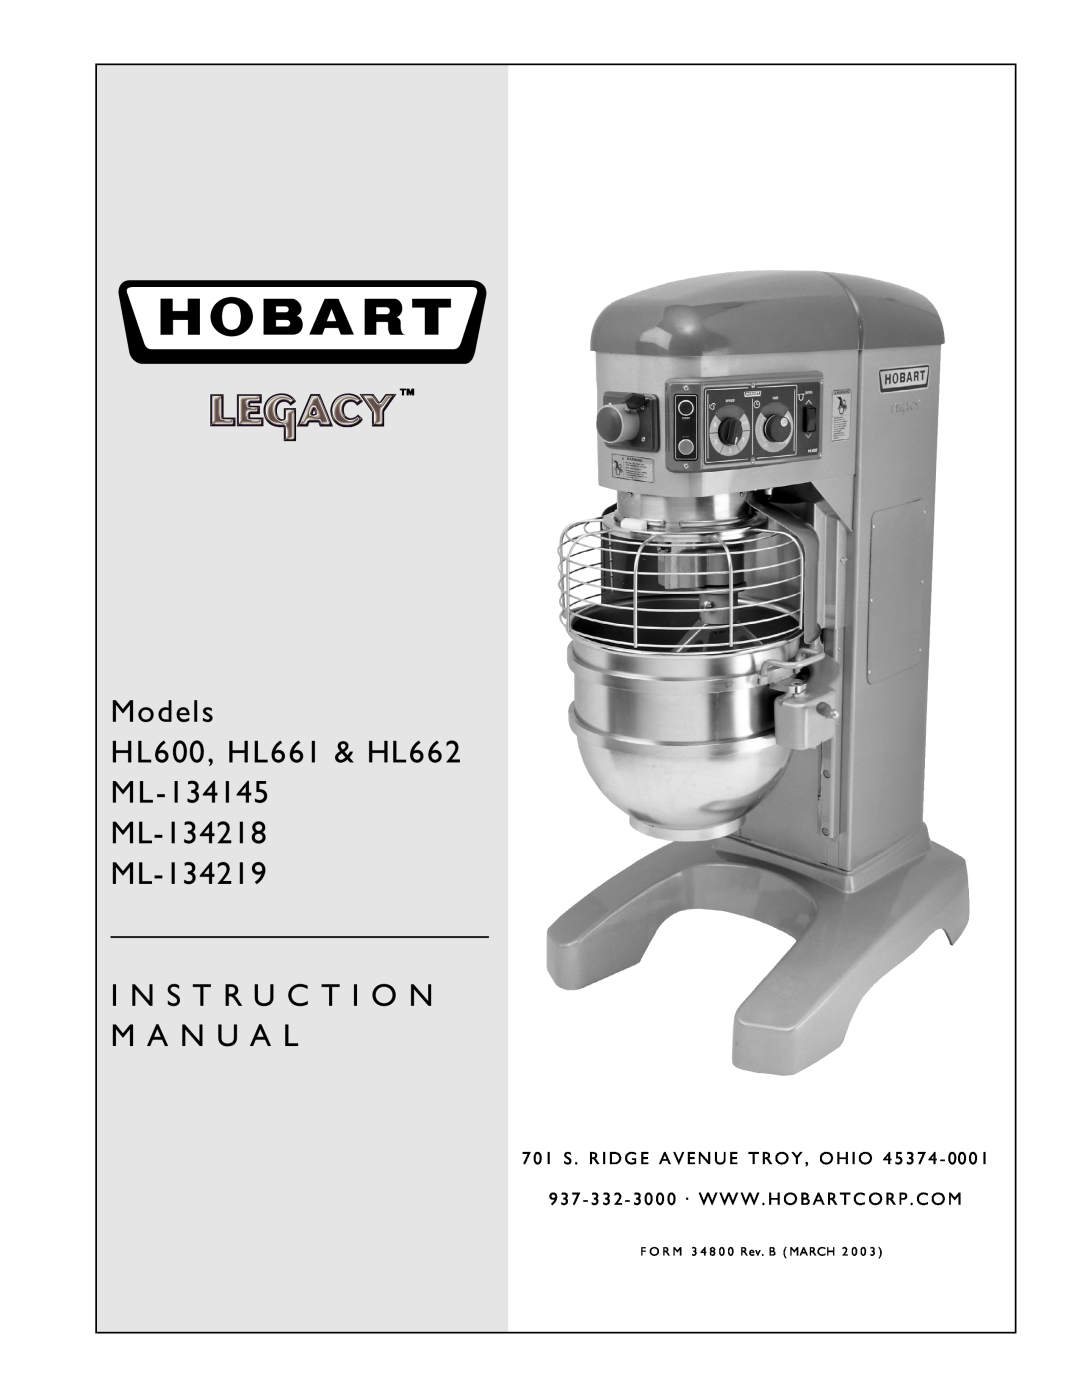 Hobart instruction manual Models HL600, HL661 & HL662 ML-134145 ML-134218 ML-134219, I N S T R U C T I O N M A N U A L 